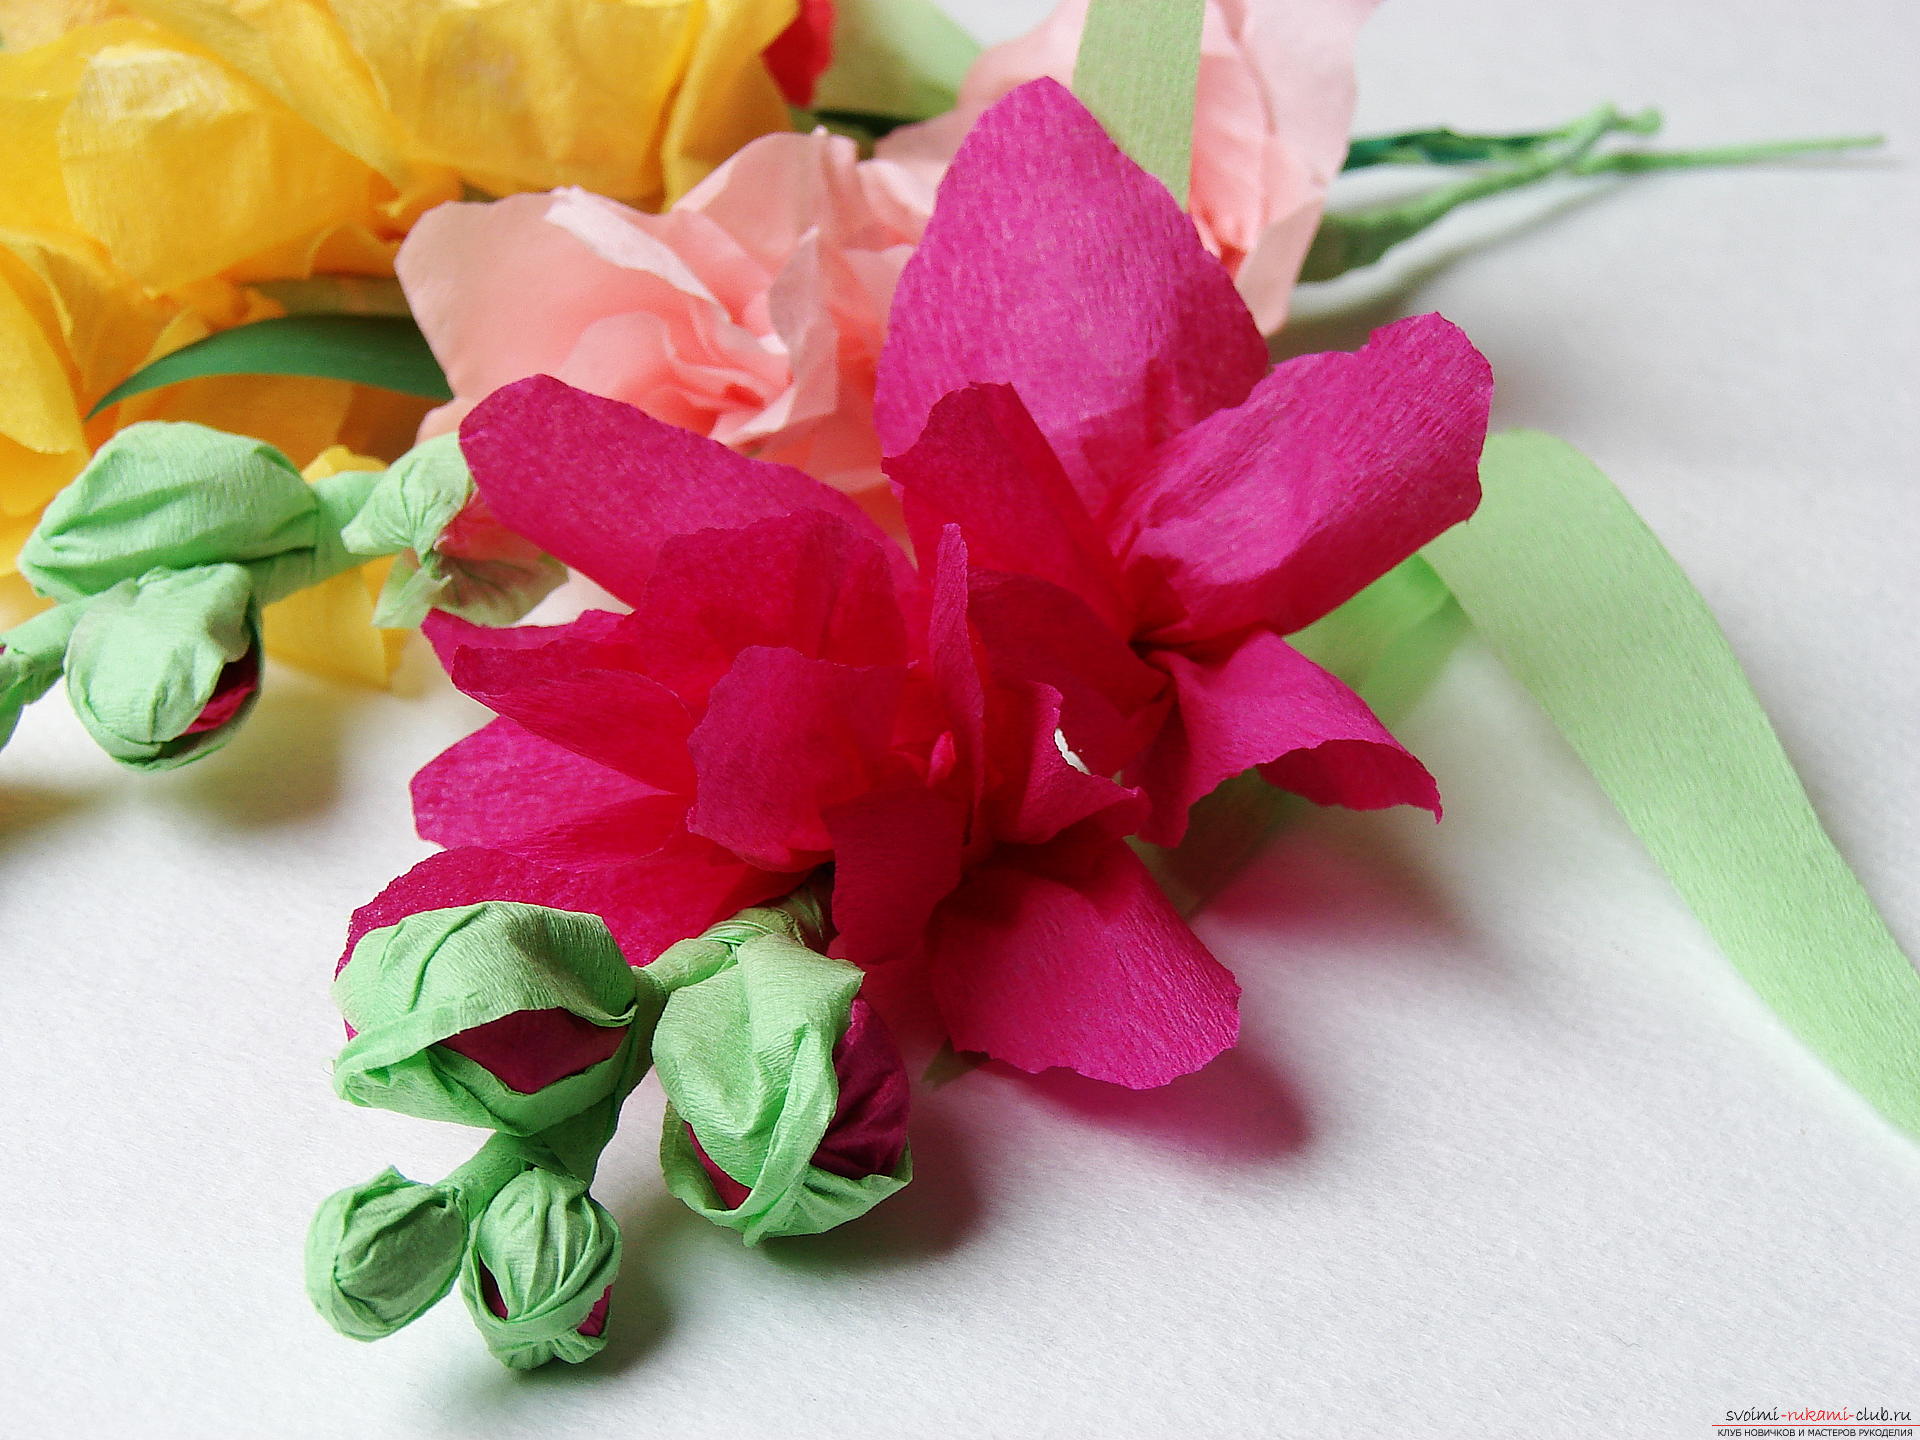 Этот мастер-класс научит как сделать цветы гладиолусы из бумаги своими руками.. Фото №1